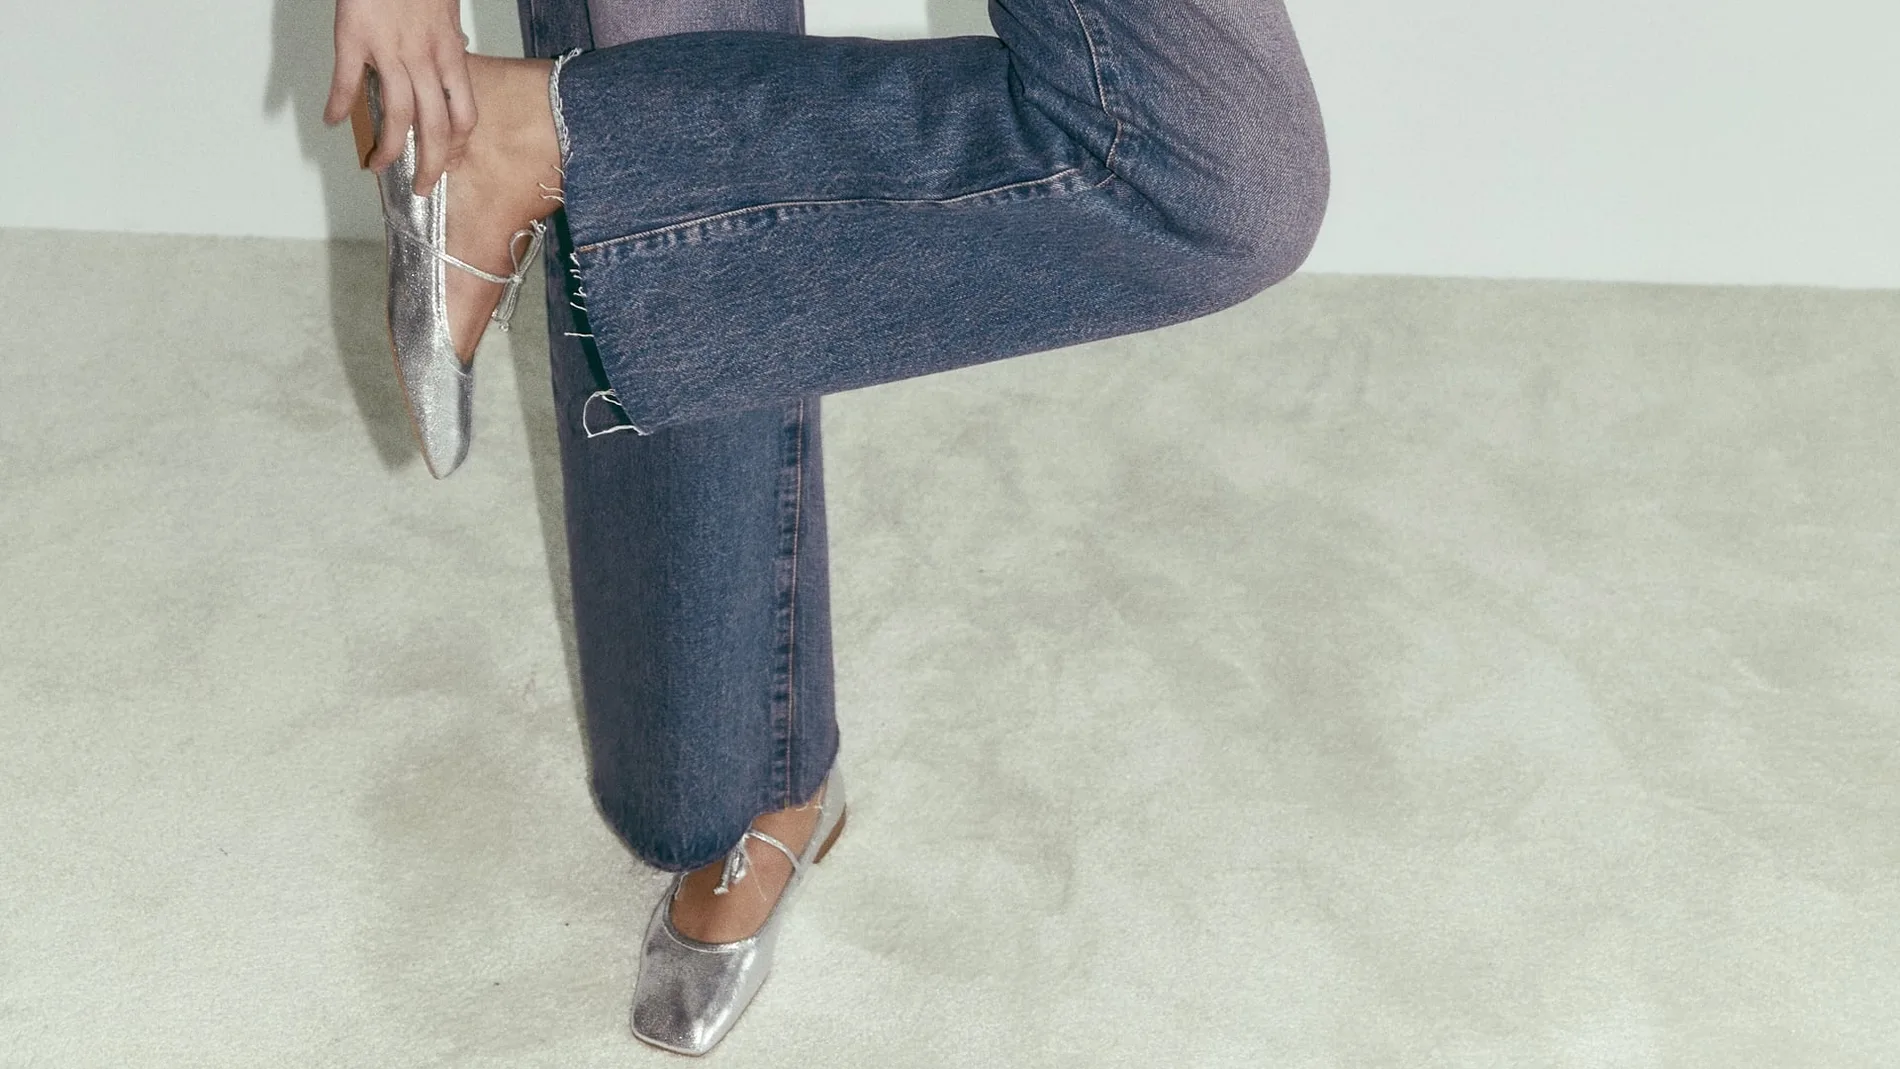 Cómo llevar zapatos de bailarina con jeans a la oficina en 2023